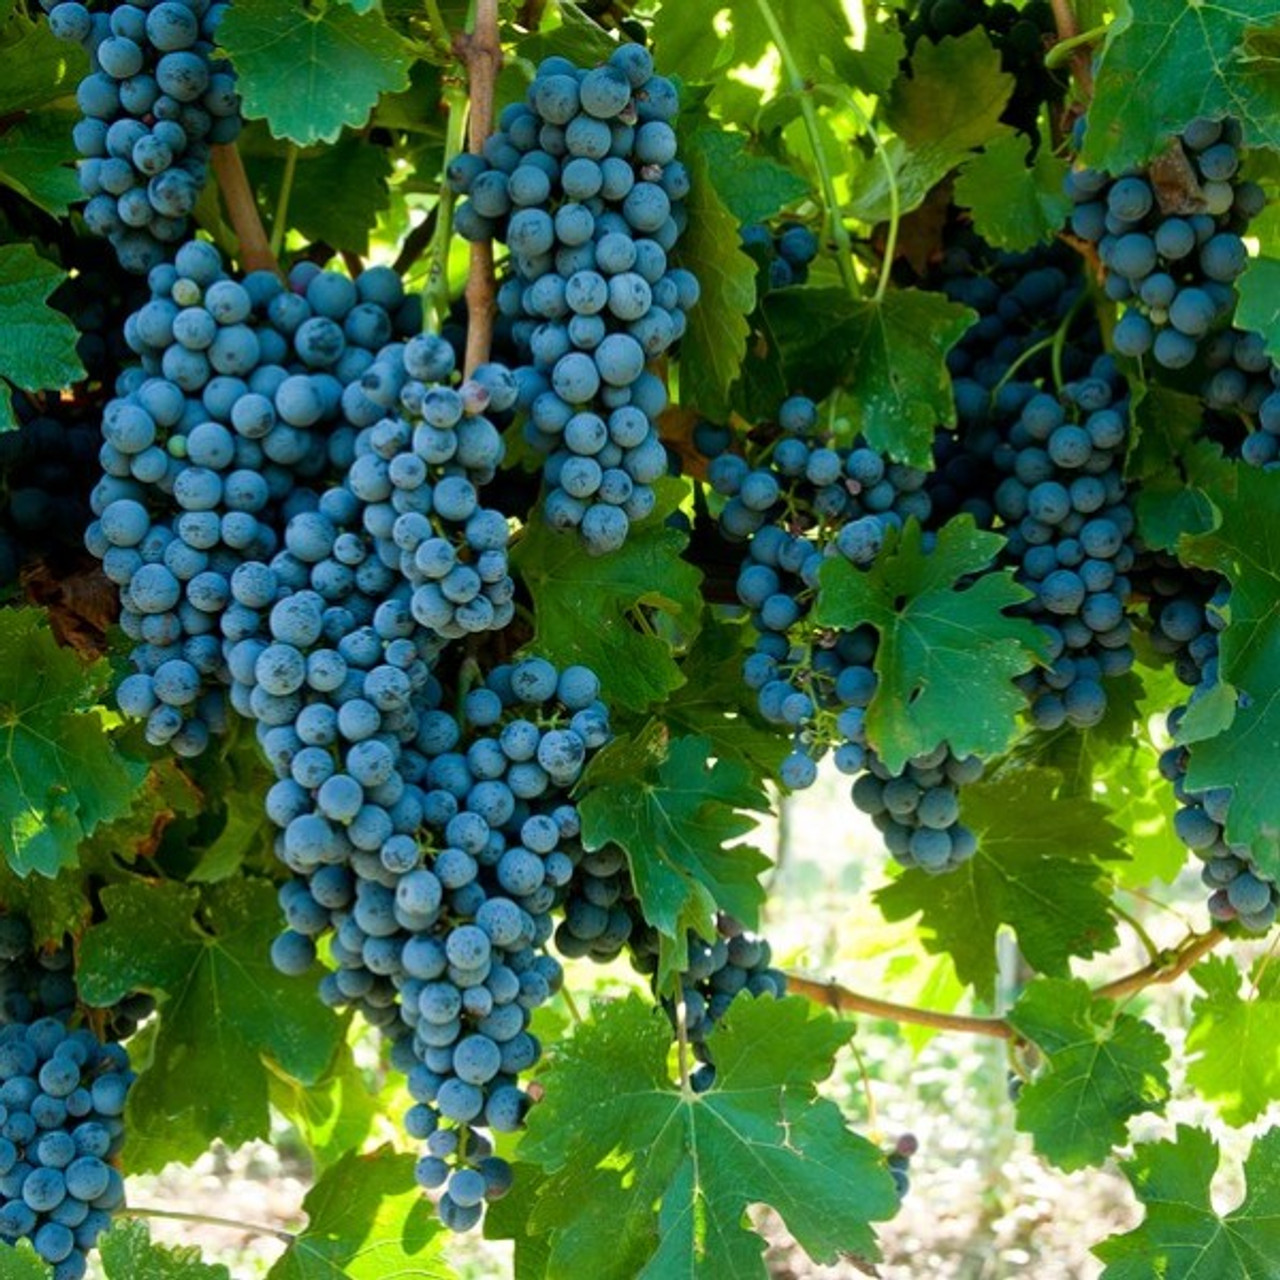 Grapes representing wine vinegar